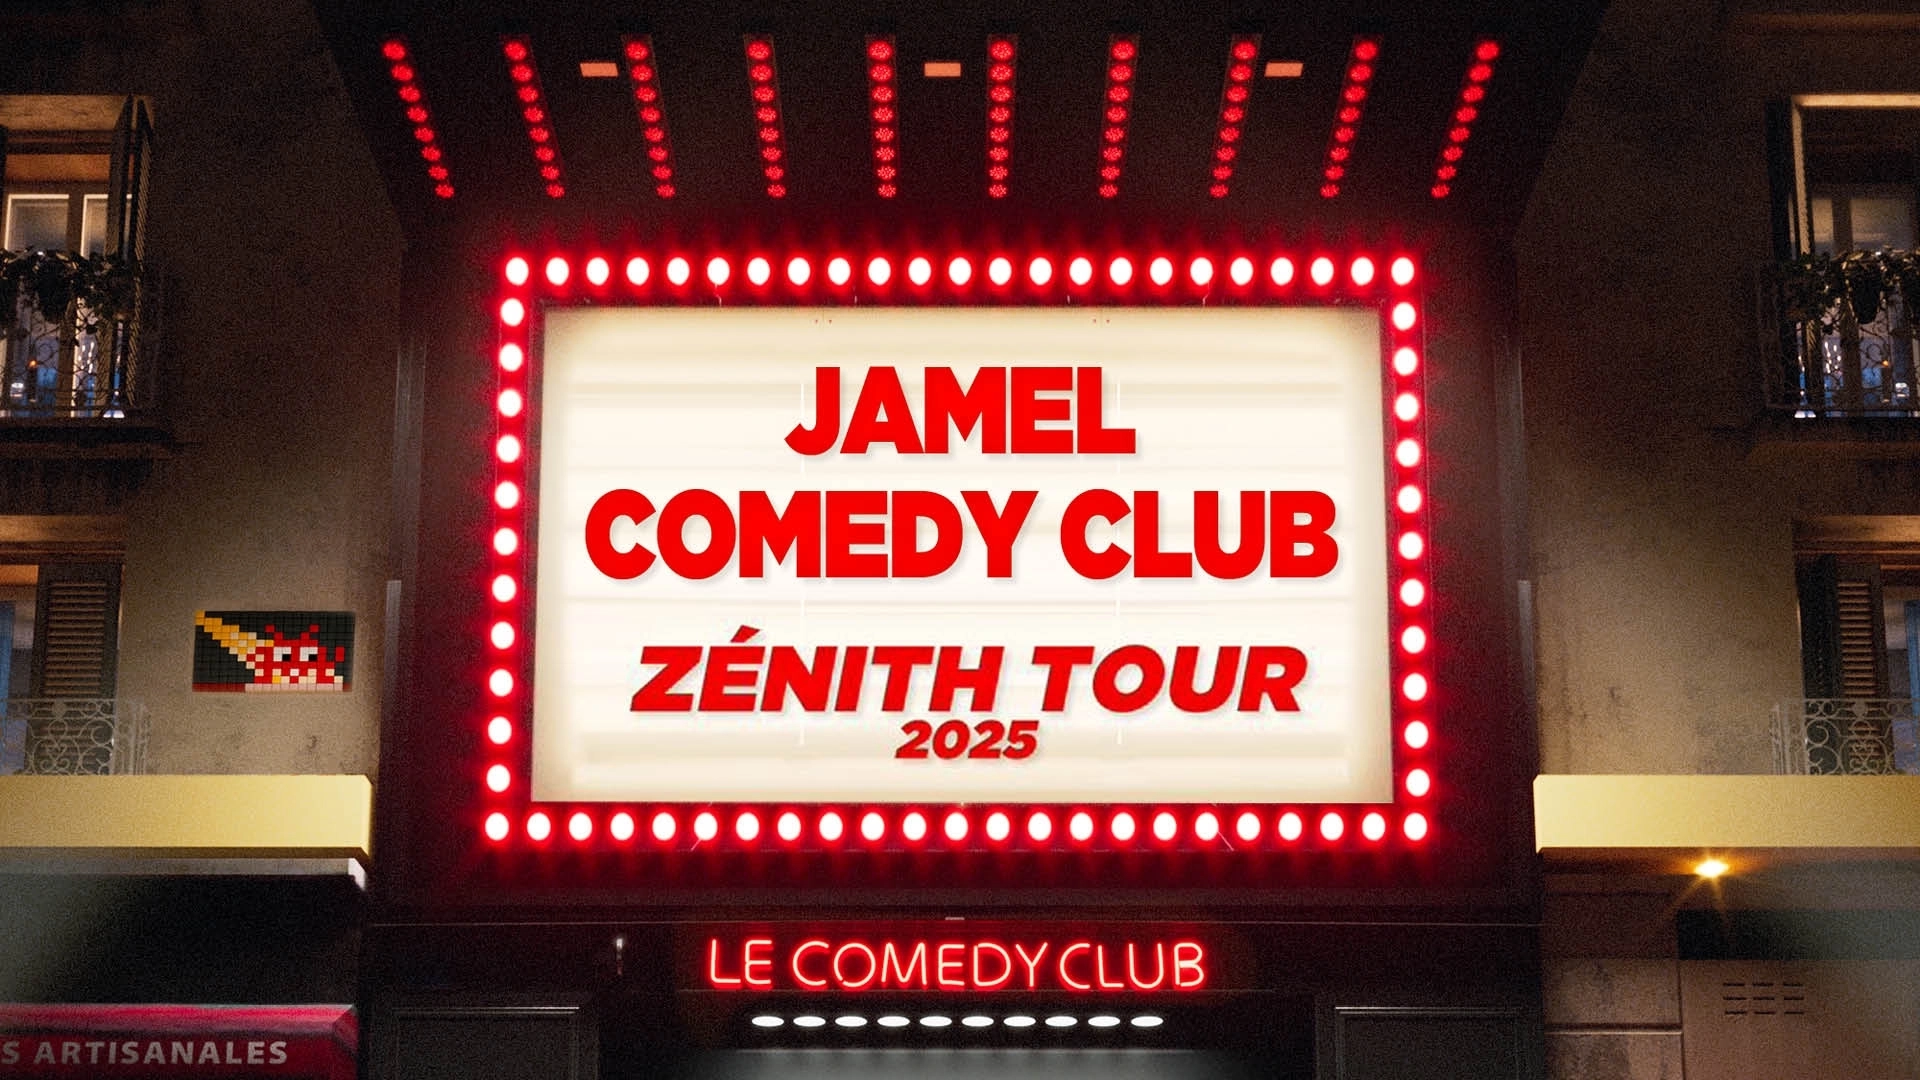 Jamel Comedy Club Zenith Tour 2025 al Ginevra Arena Tickets